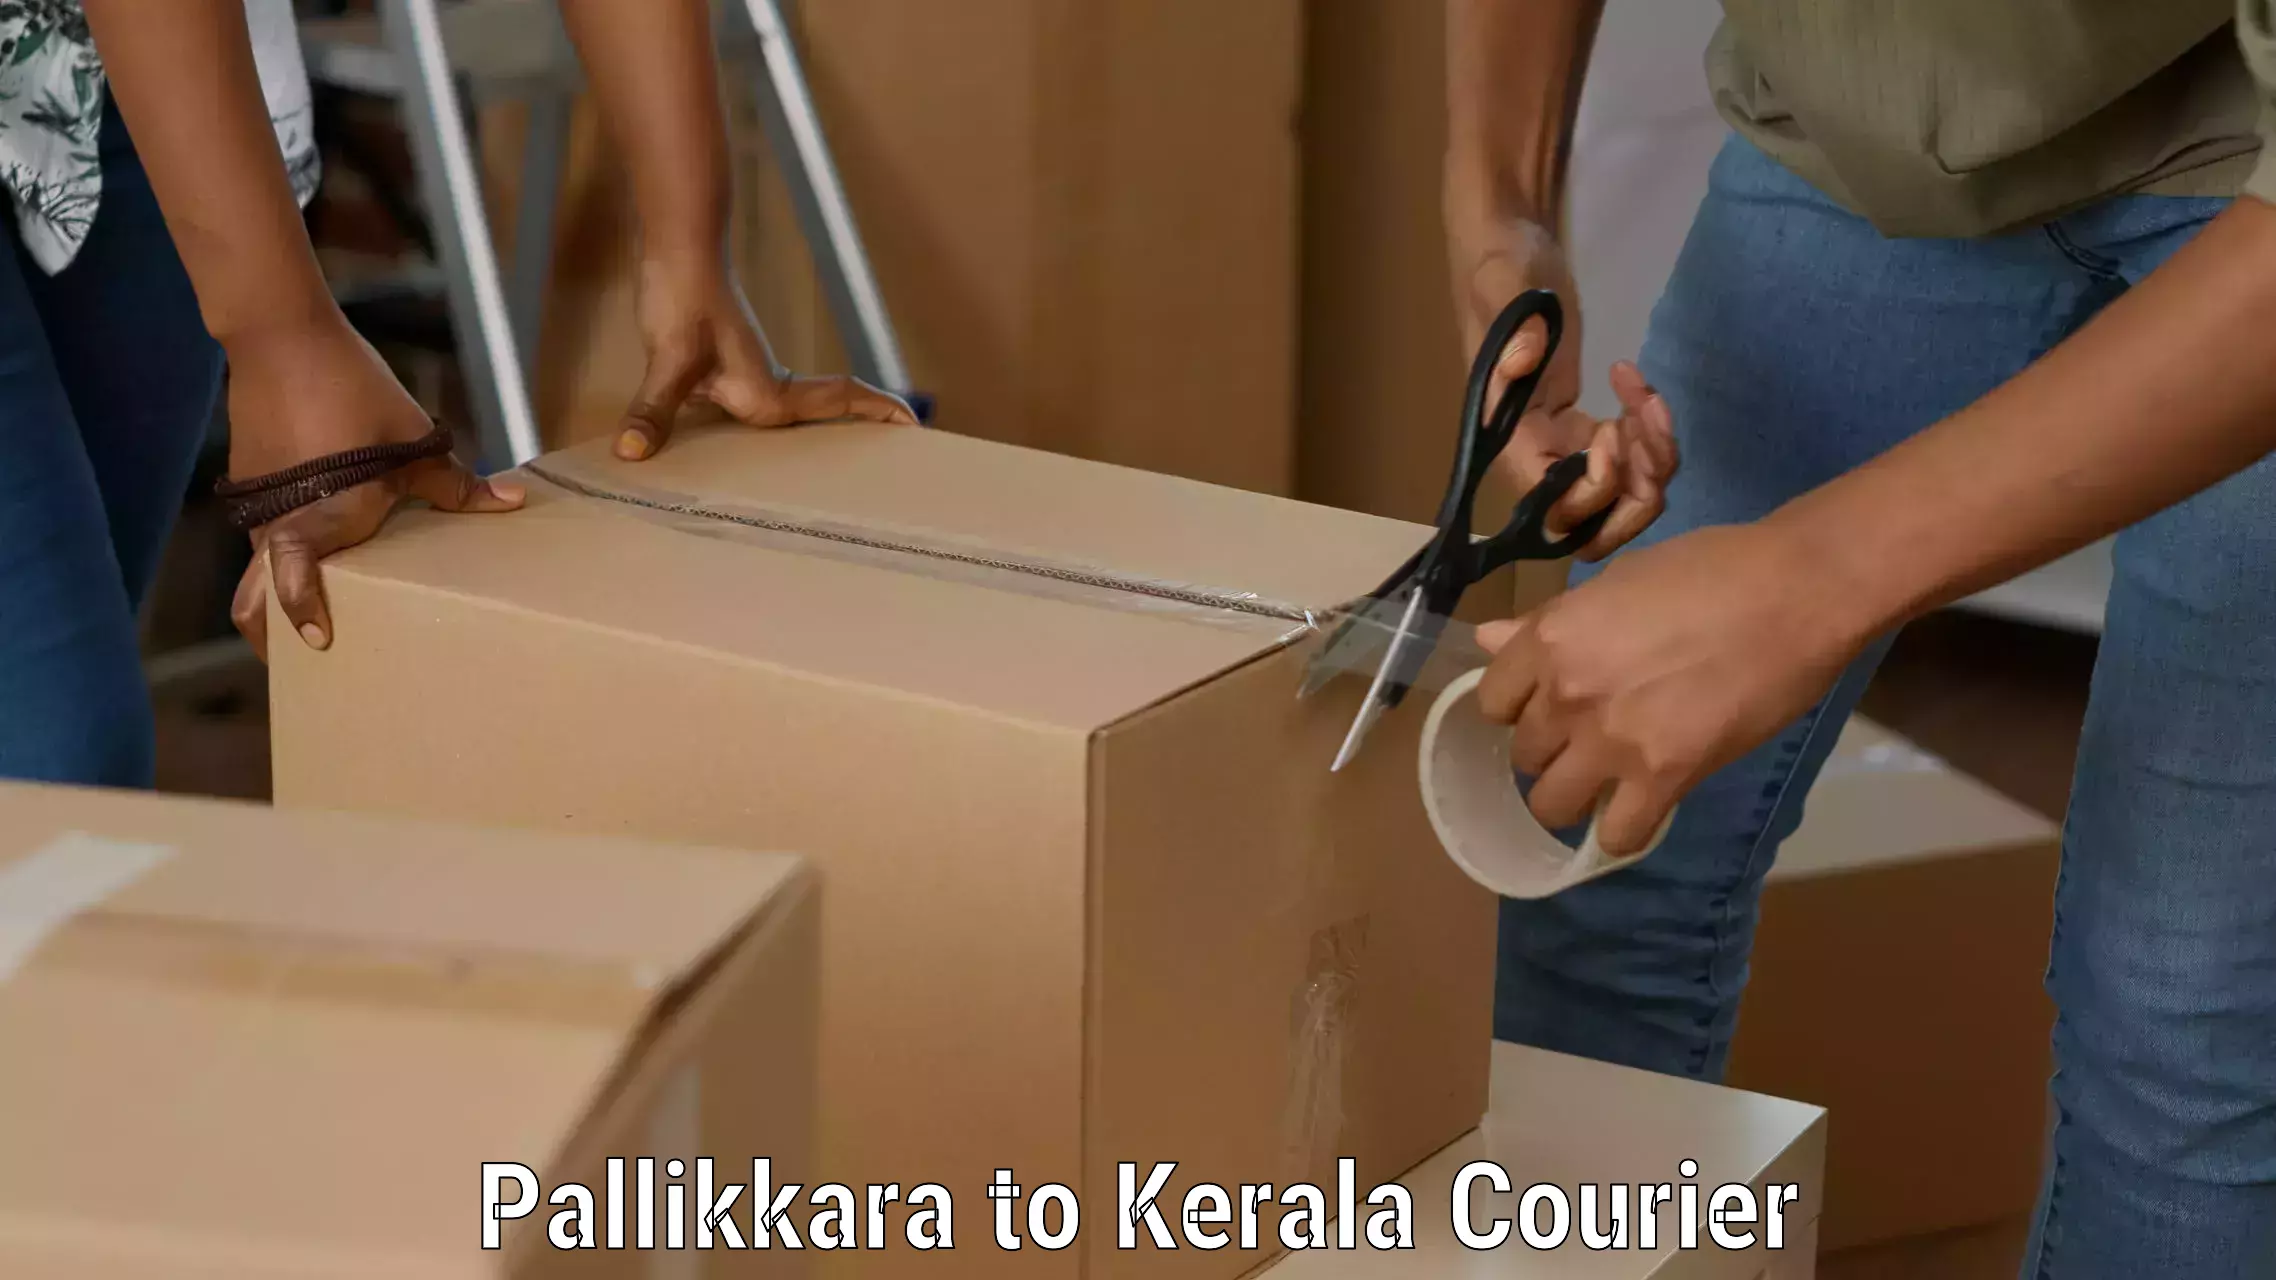 Courier service innovation Pallikkara to Pathanamthitta